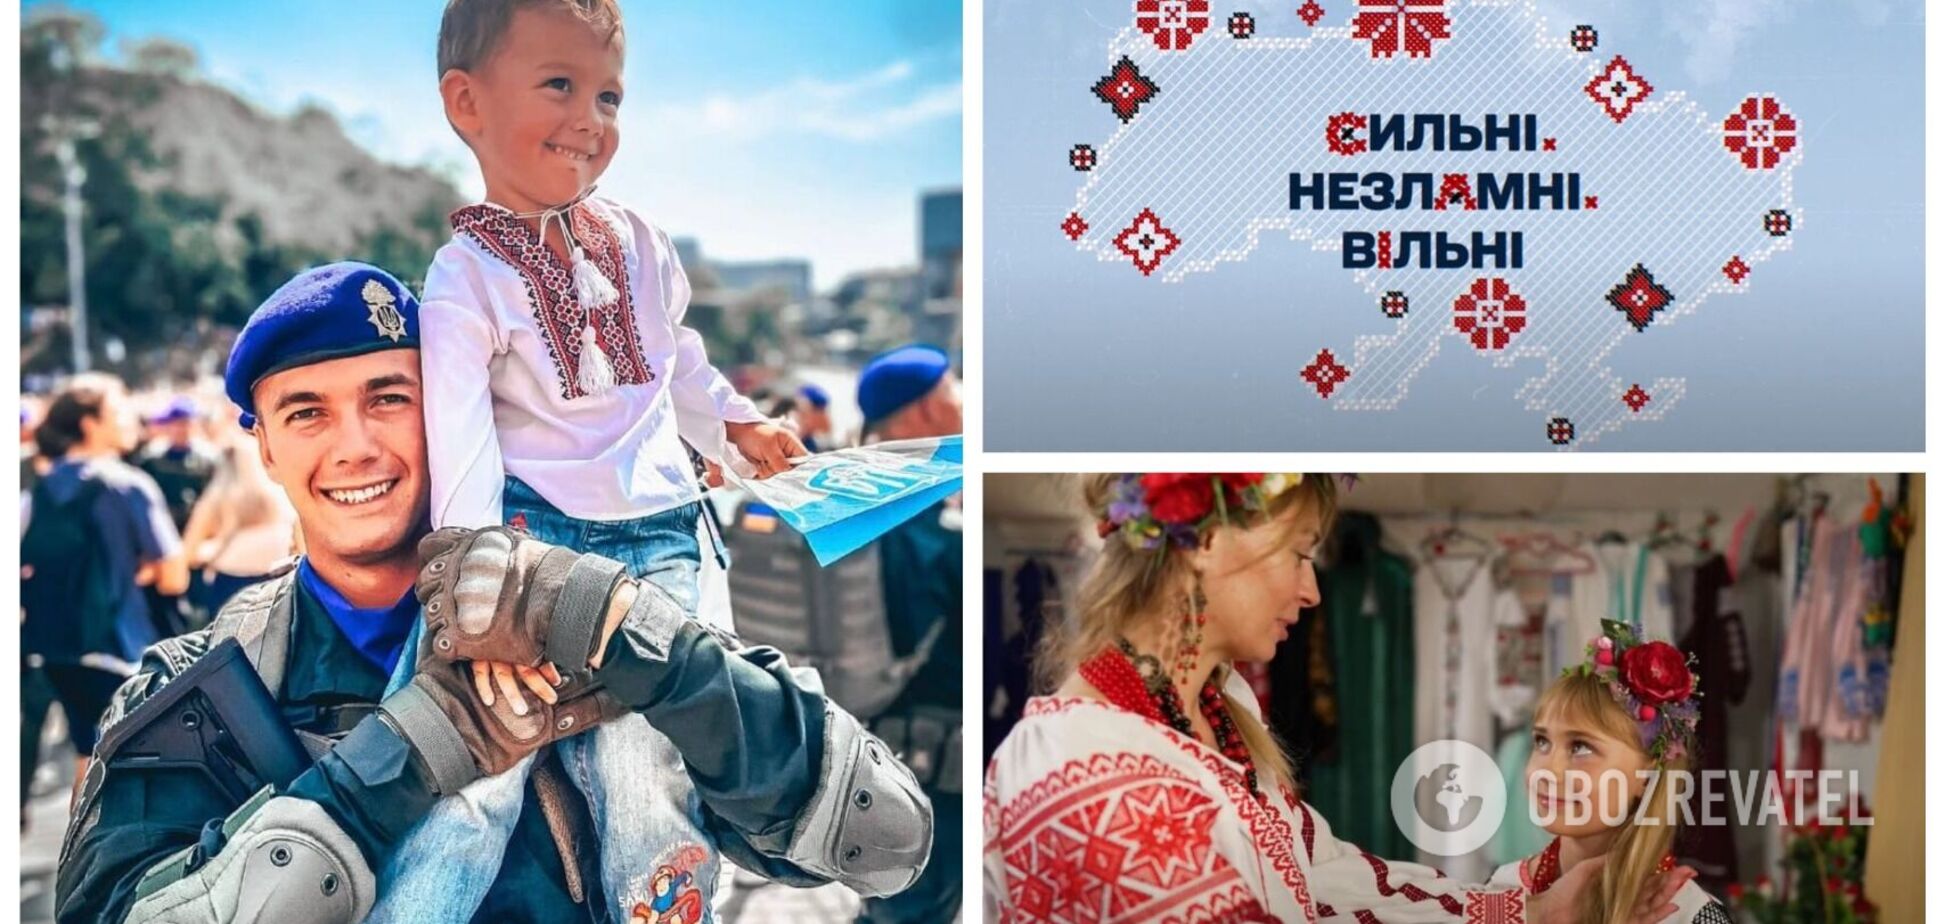 'Это код украинской нации': как отмечают День вышиванки в Украине в 2022 году. Фото и видео